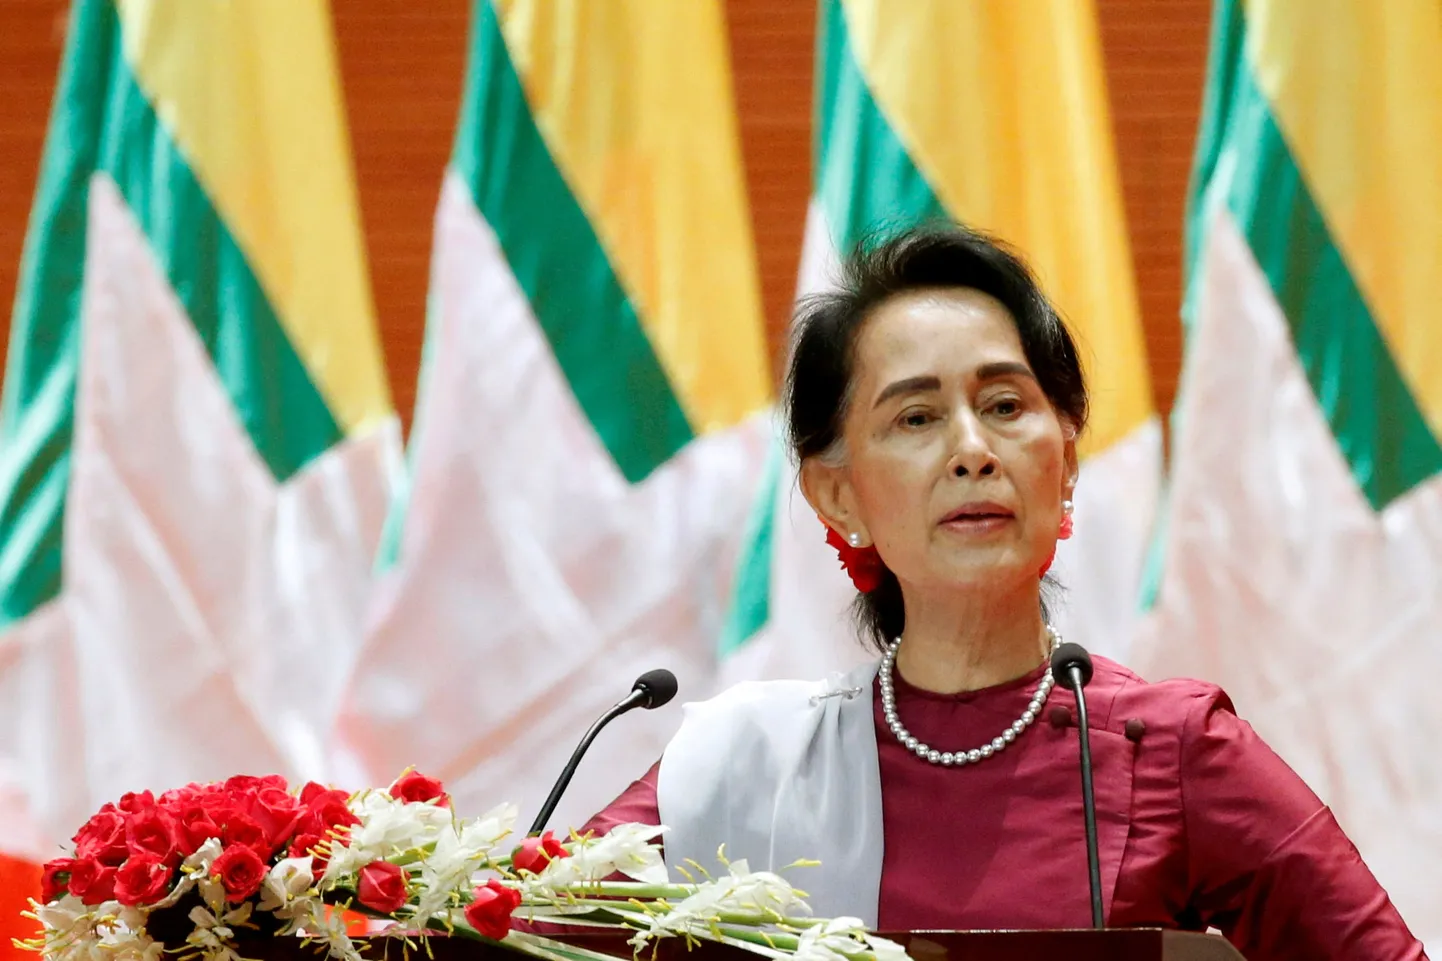 Myanmari kukutatud tsiviiljuht Aung San Suu Kyi. Foto on tehtud 2017. aasta 19. septembril, mil Suu Kyi pidas kõne seoses rohingjade olukorraga.